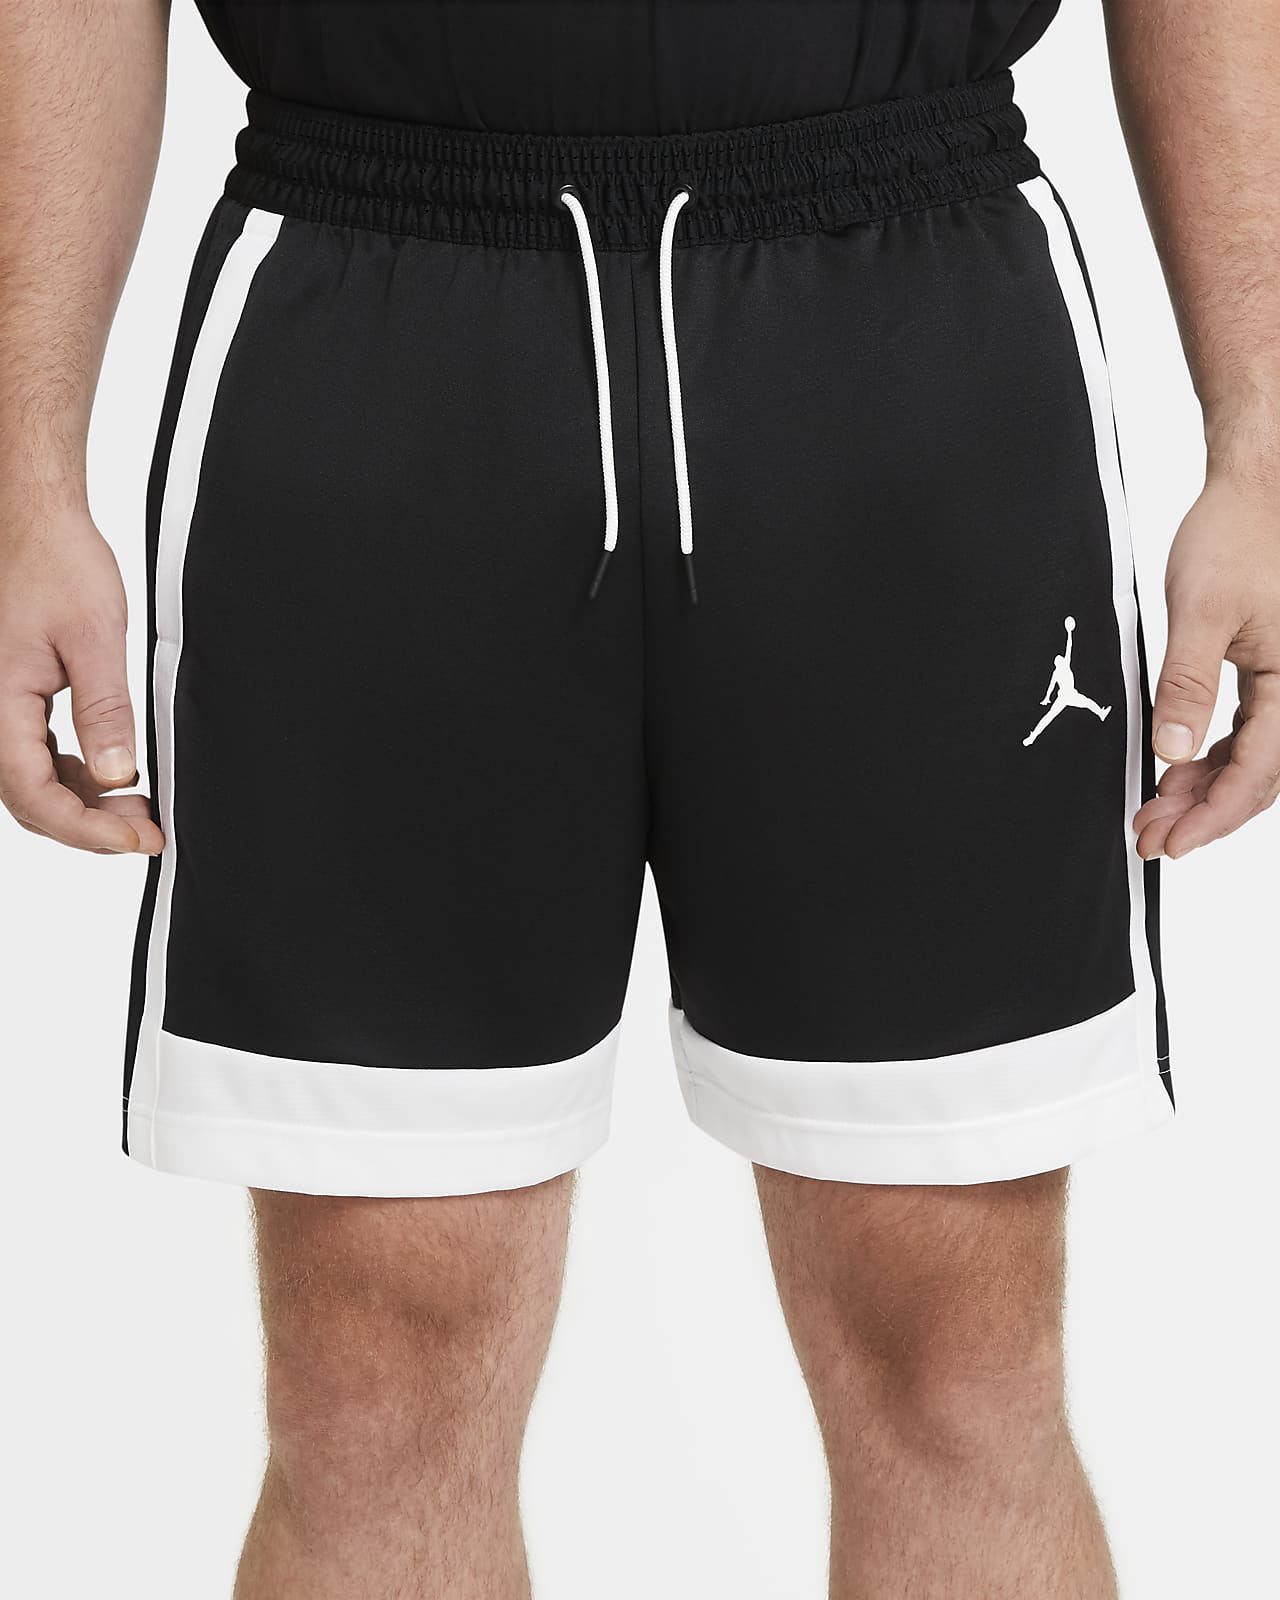 nike on court basketball shorts